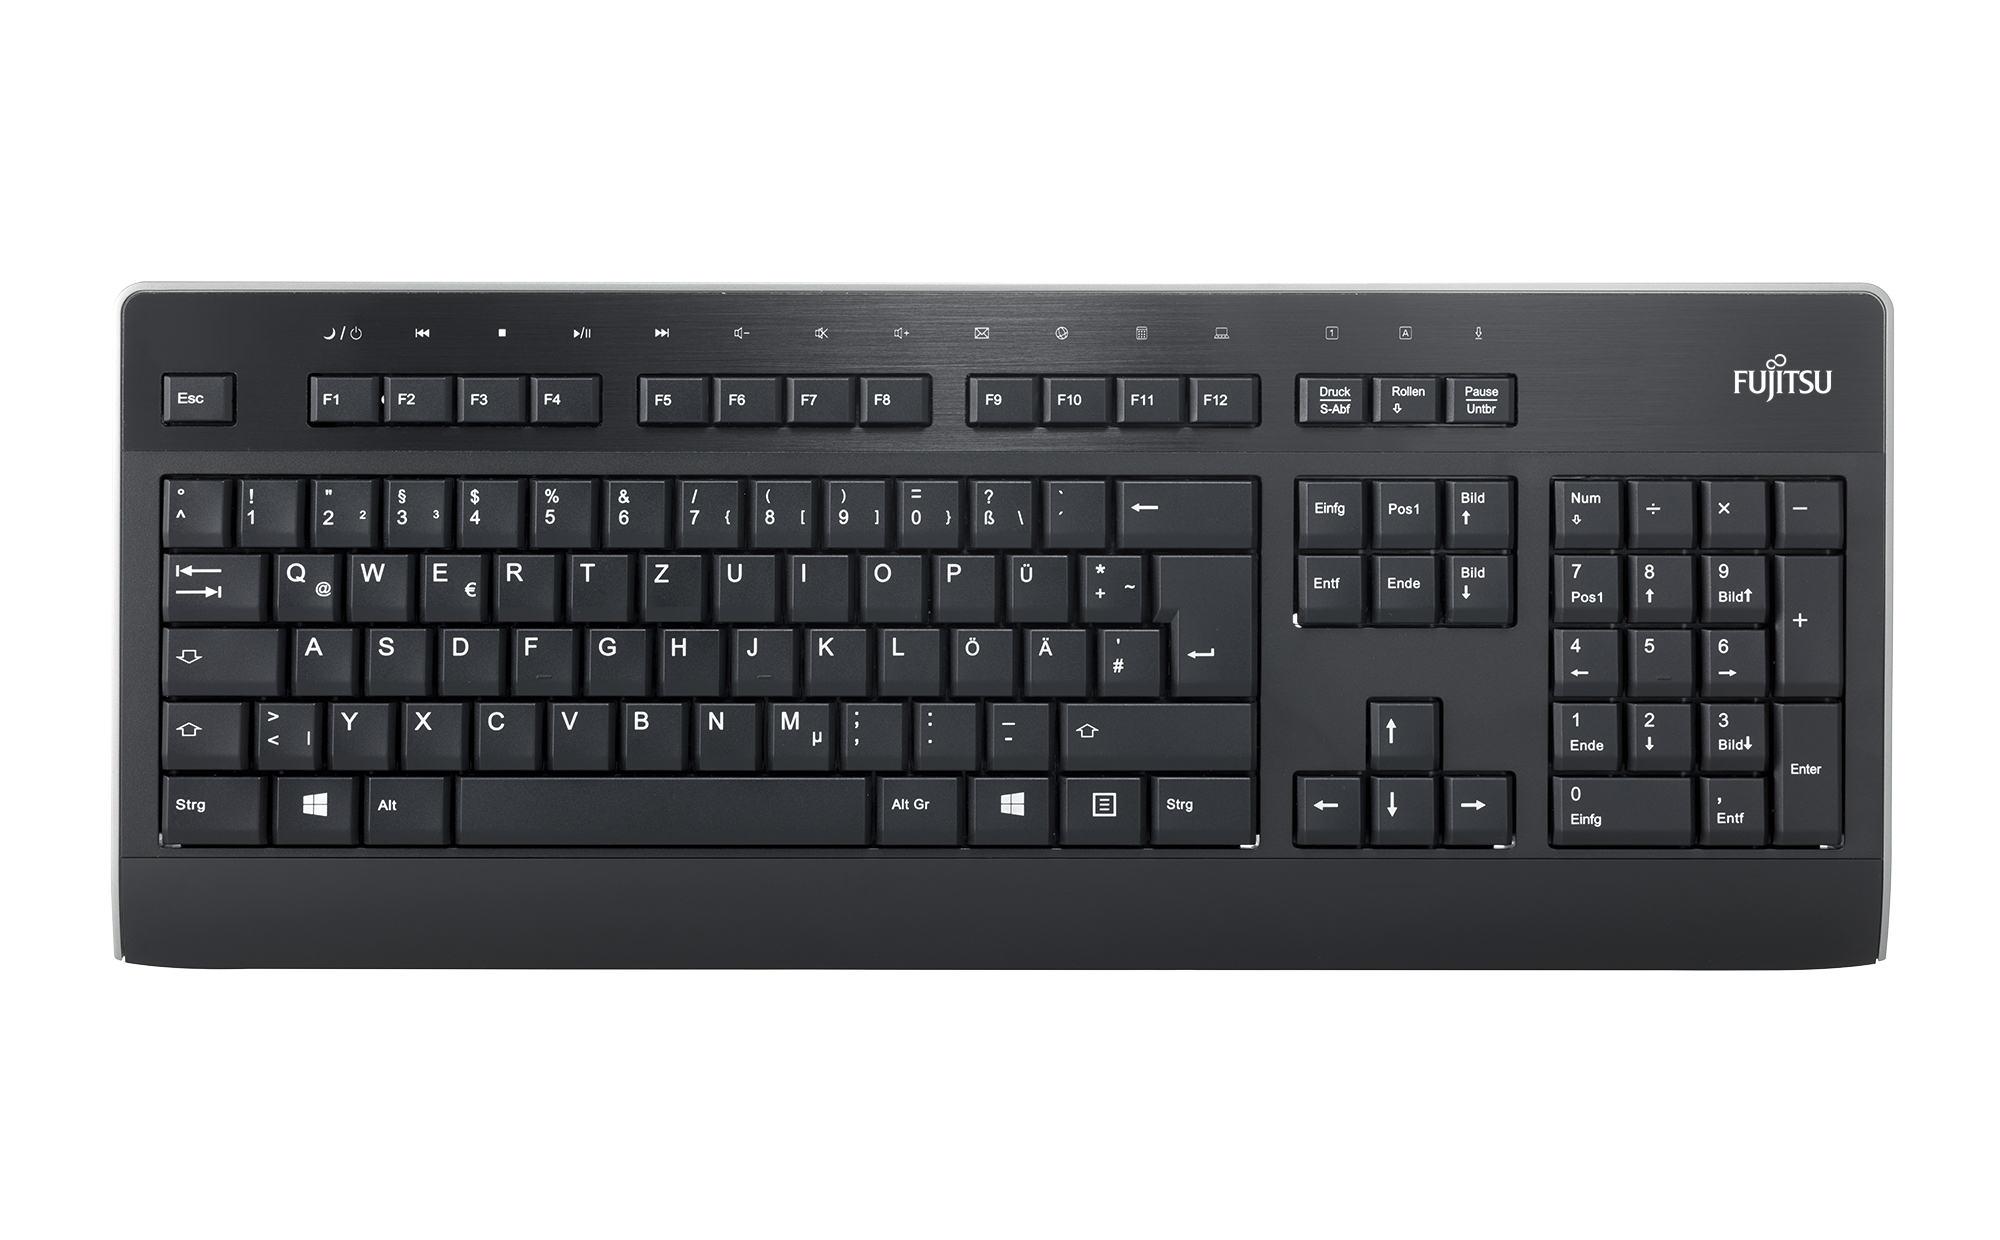 Keyboard KB955 USB FR